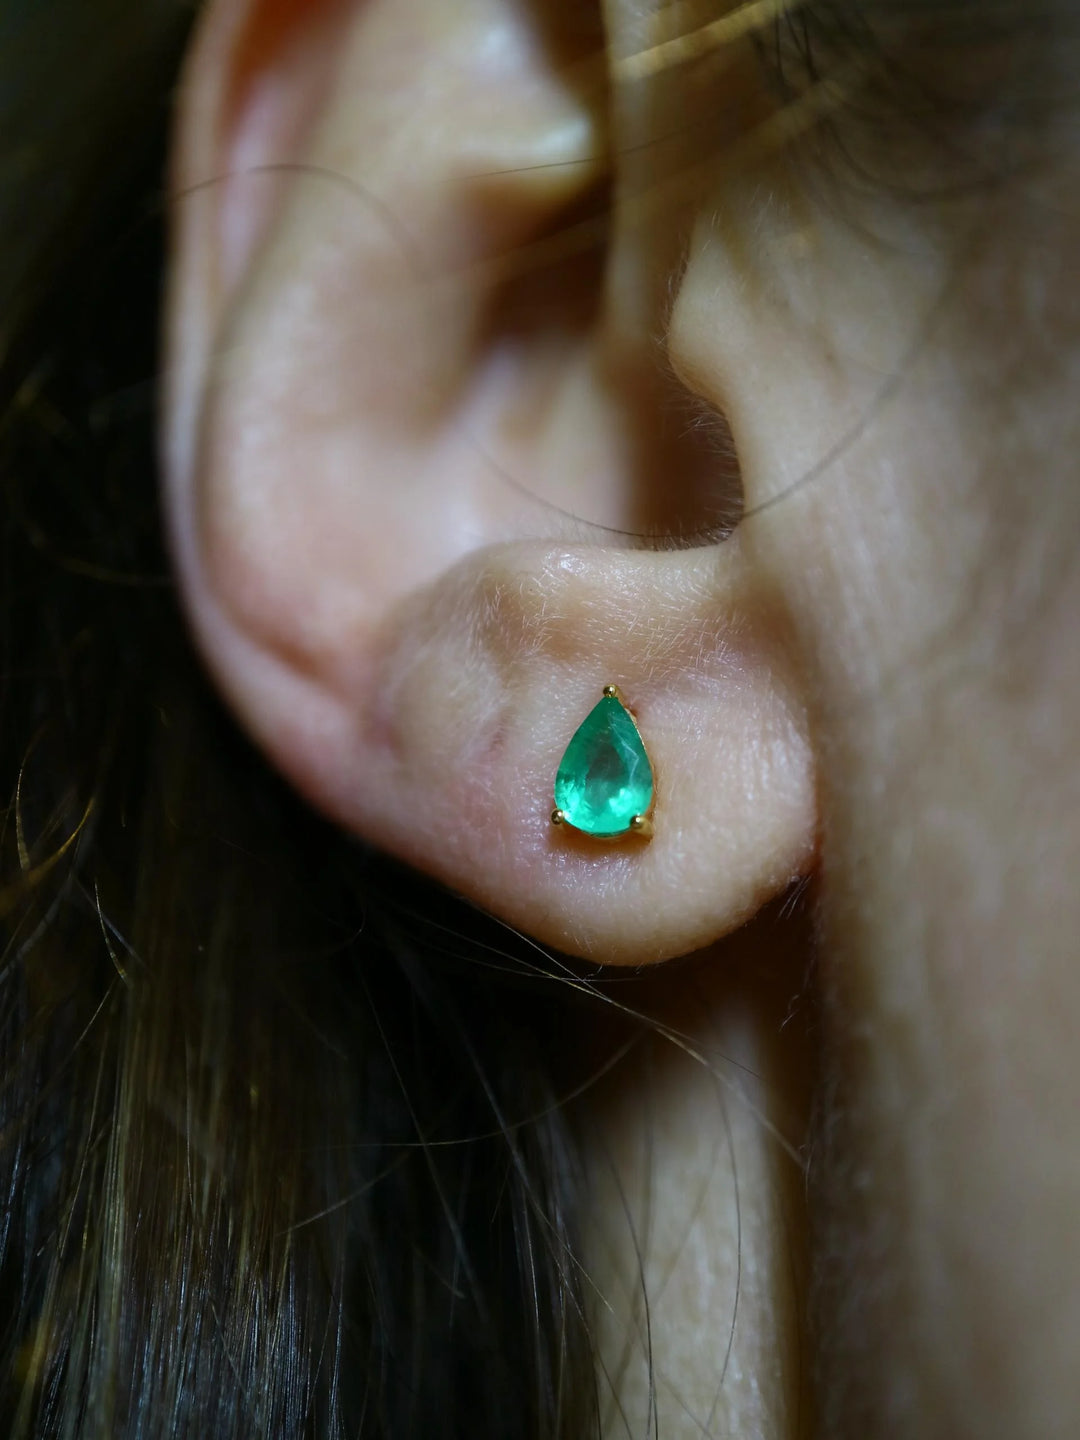 Pear Cut Zambian Emerald Gold Stud Earrings